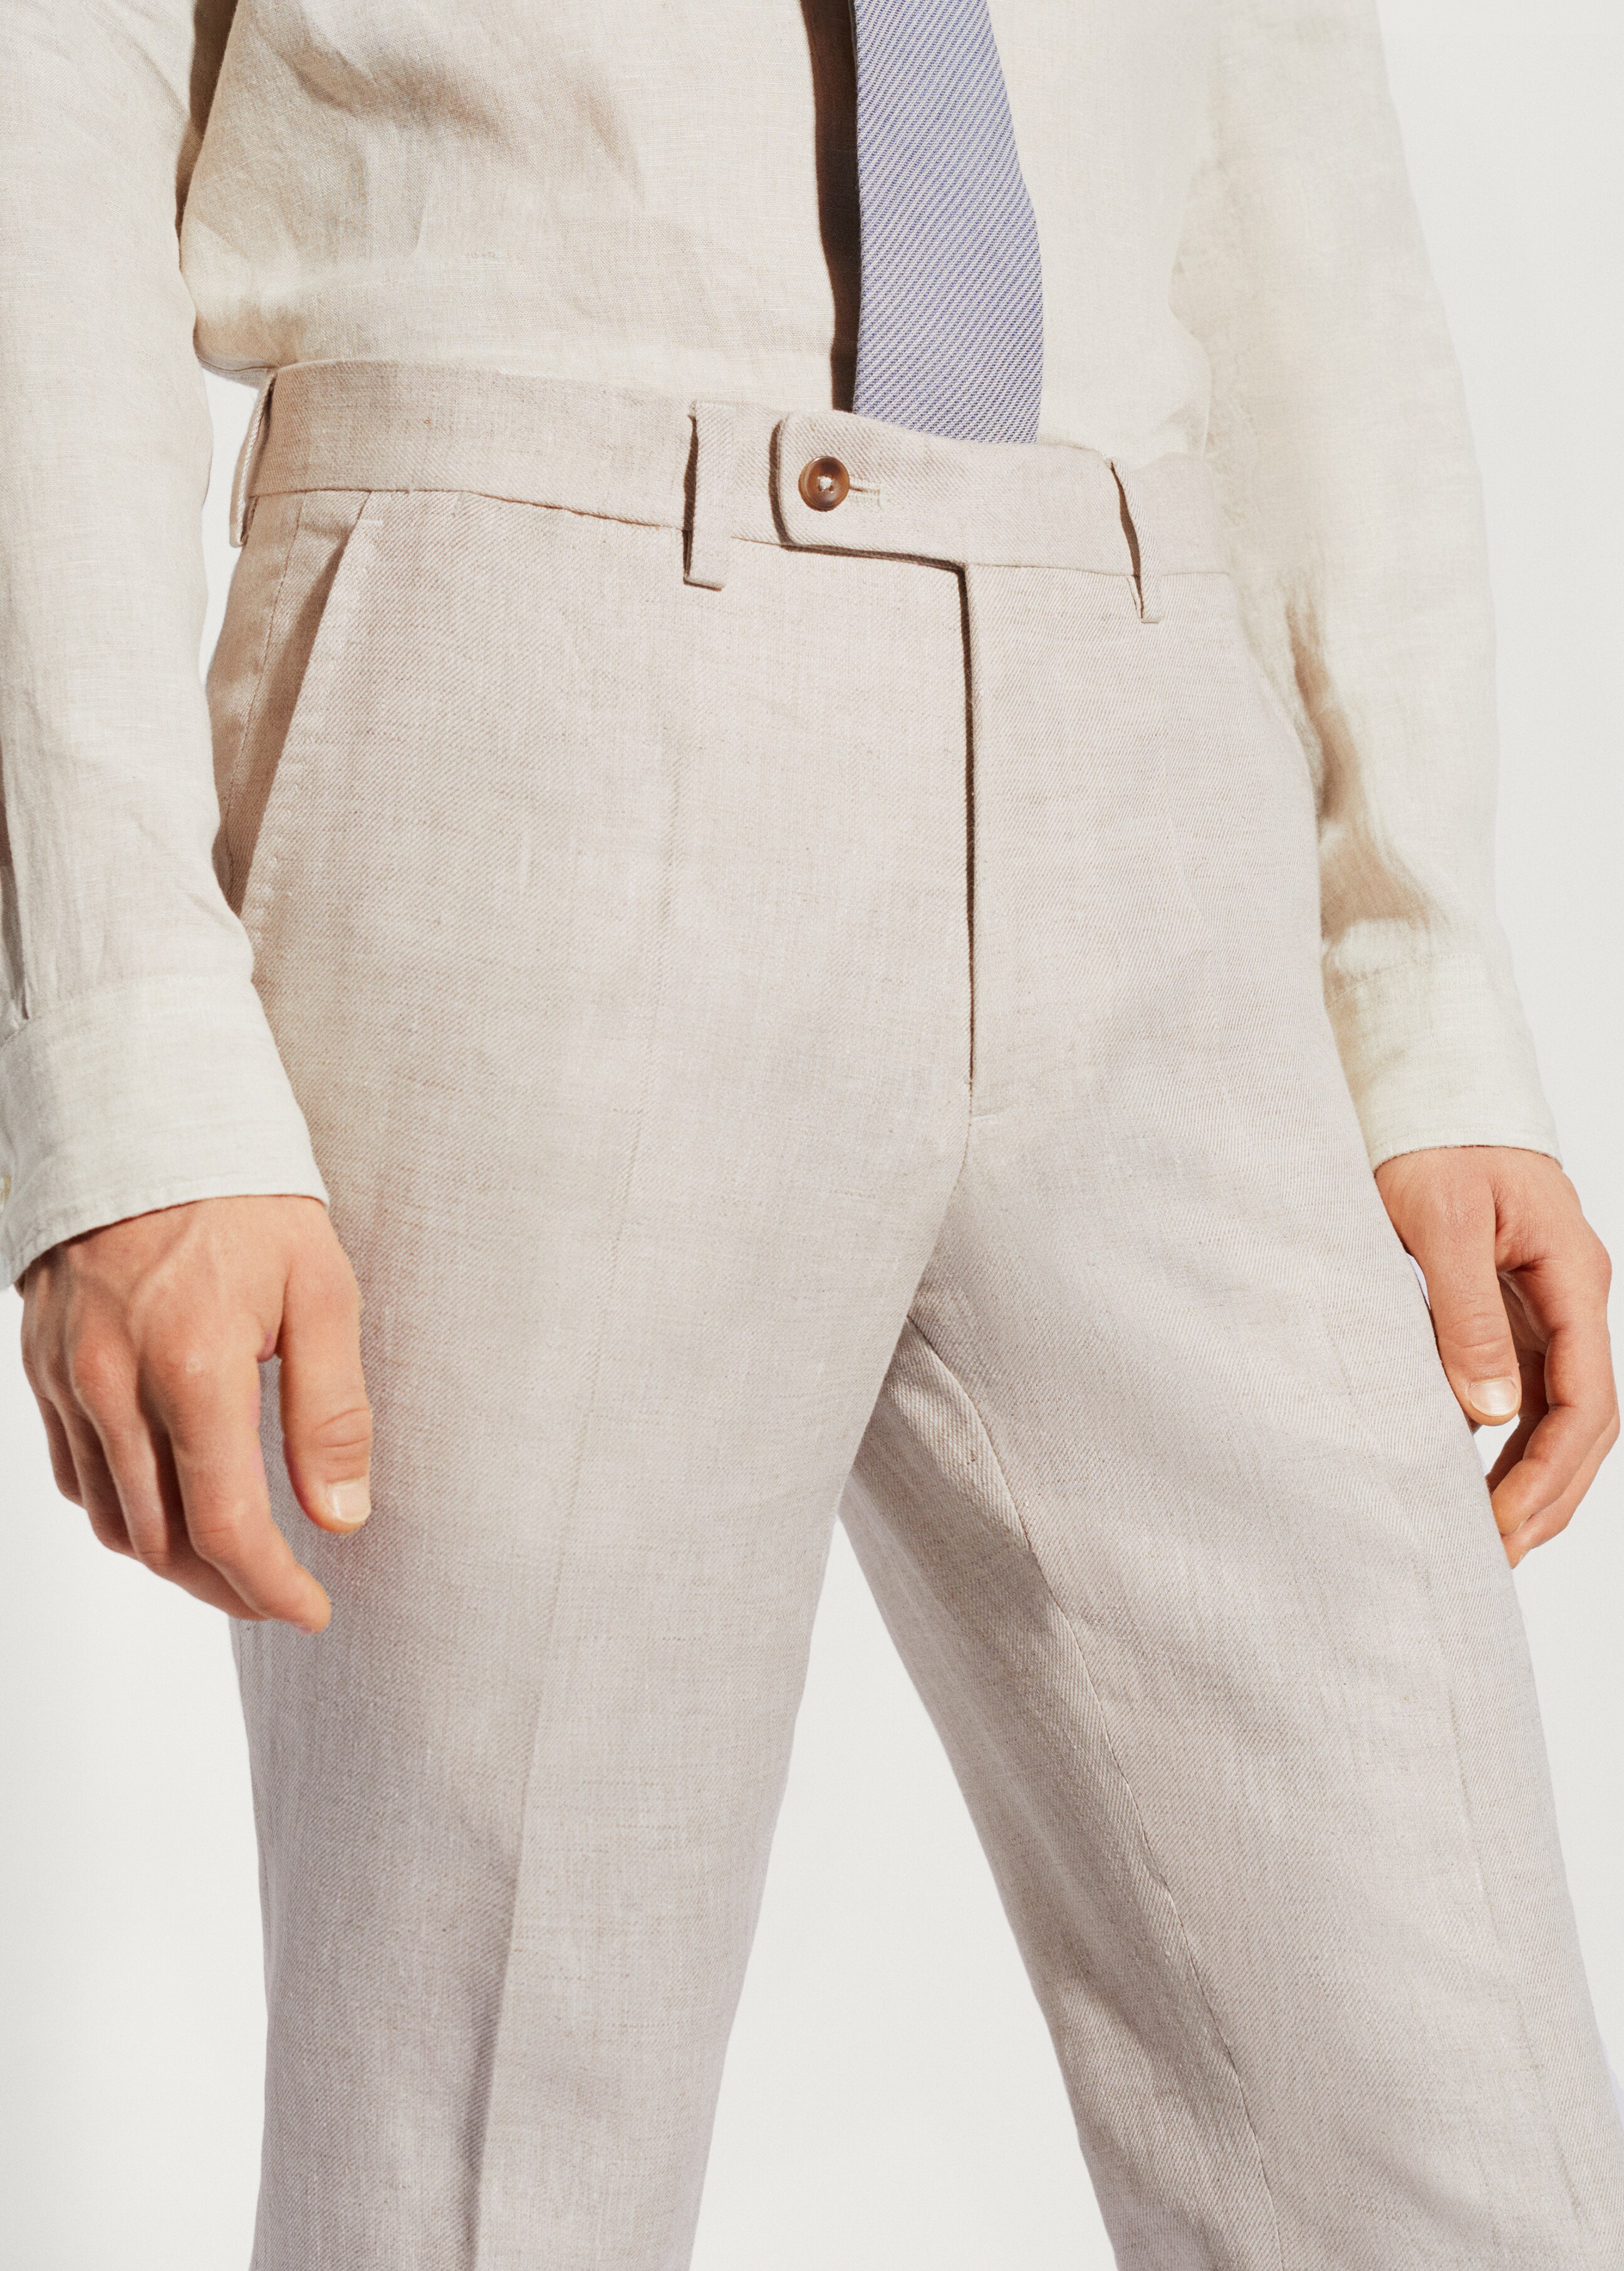 Pantalón traje 100% lino - Detalle del artículo 1